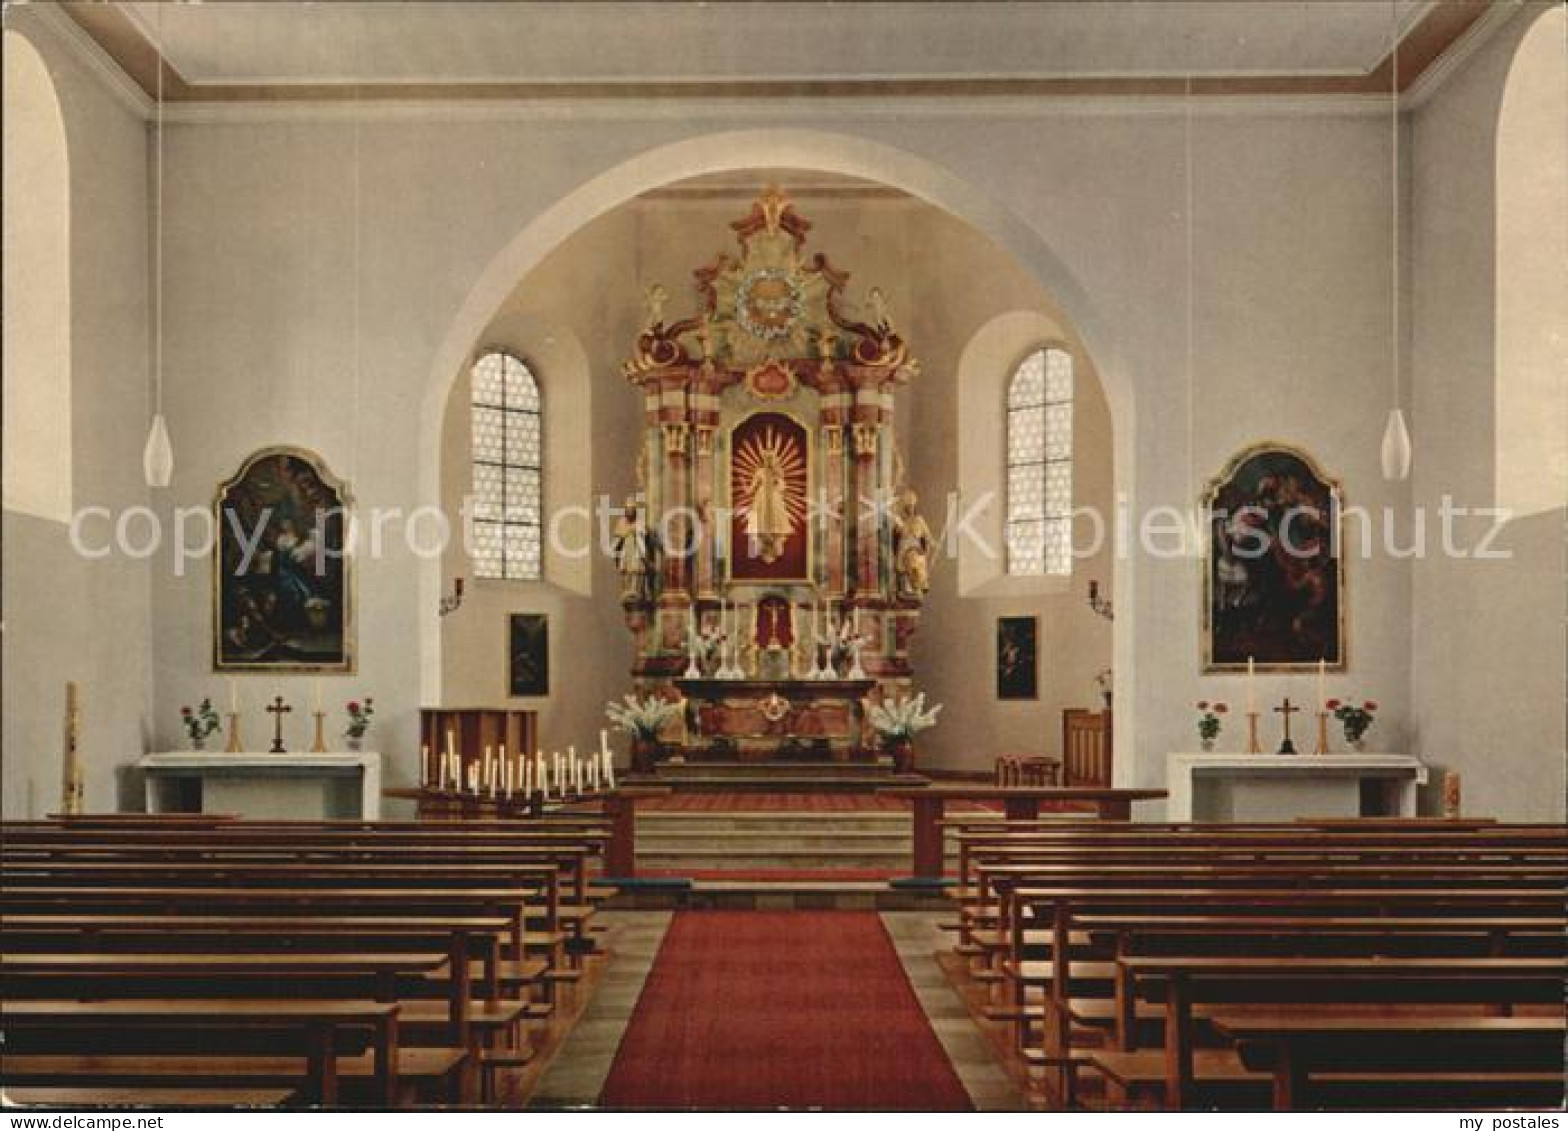 72507684 St Peter Schwarzwald Wallfahrtskirche Maria Lindenberg Innen St. Peter - St. Peter